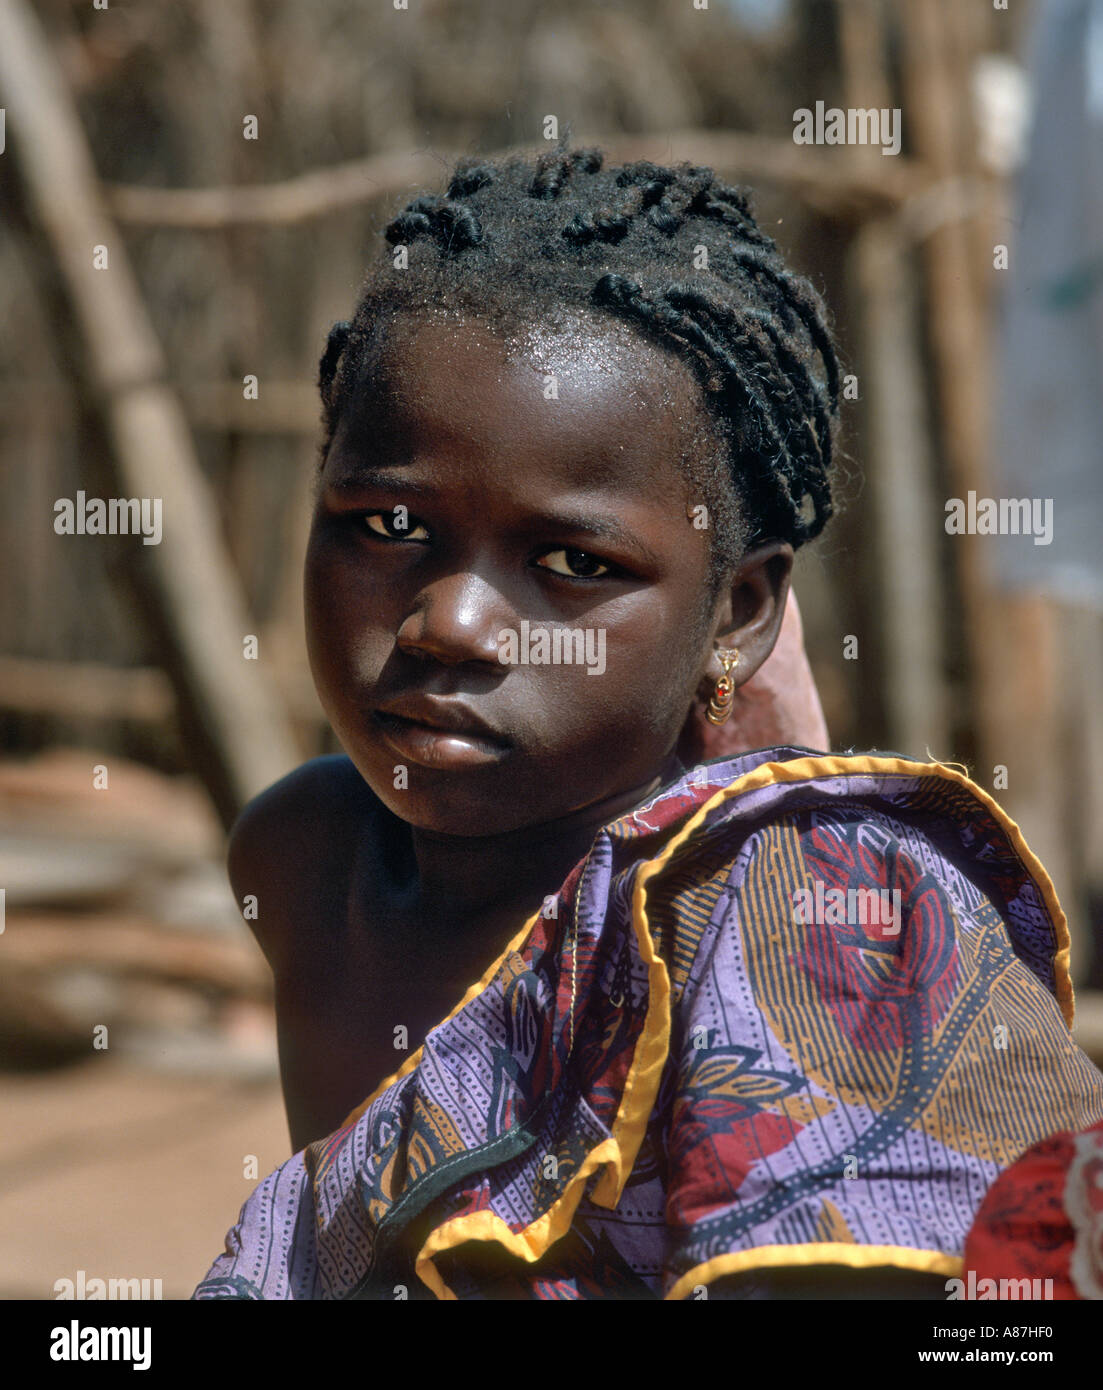 Retrato de la pequeña muchacha nativa en una aldea local, Gambia, al oeste de África. Foto de stock